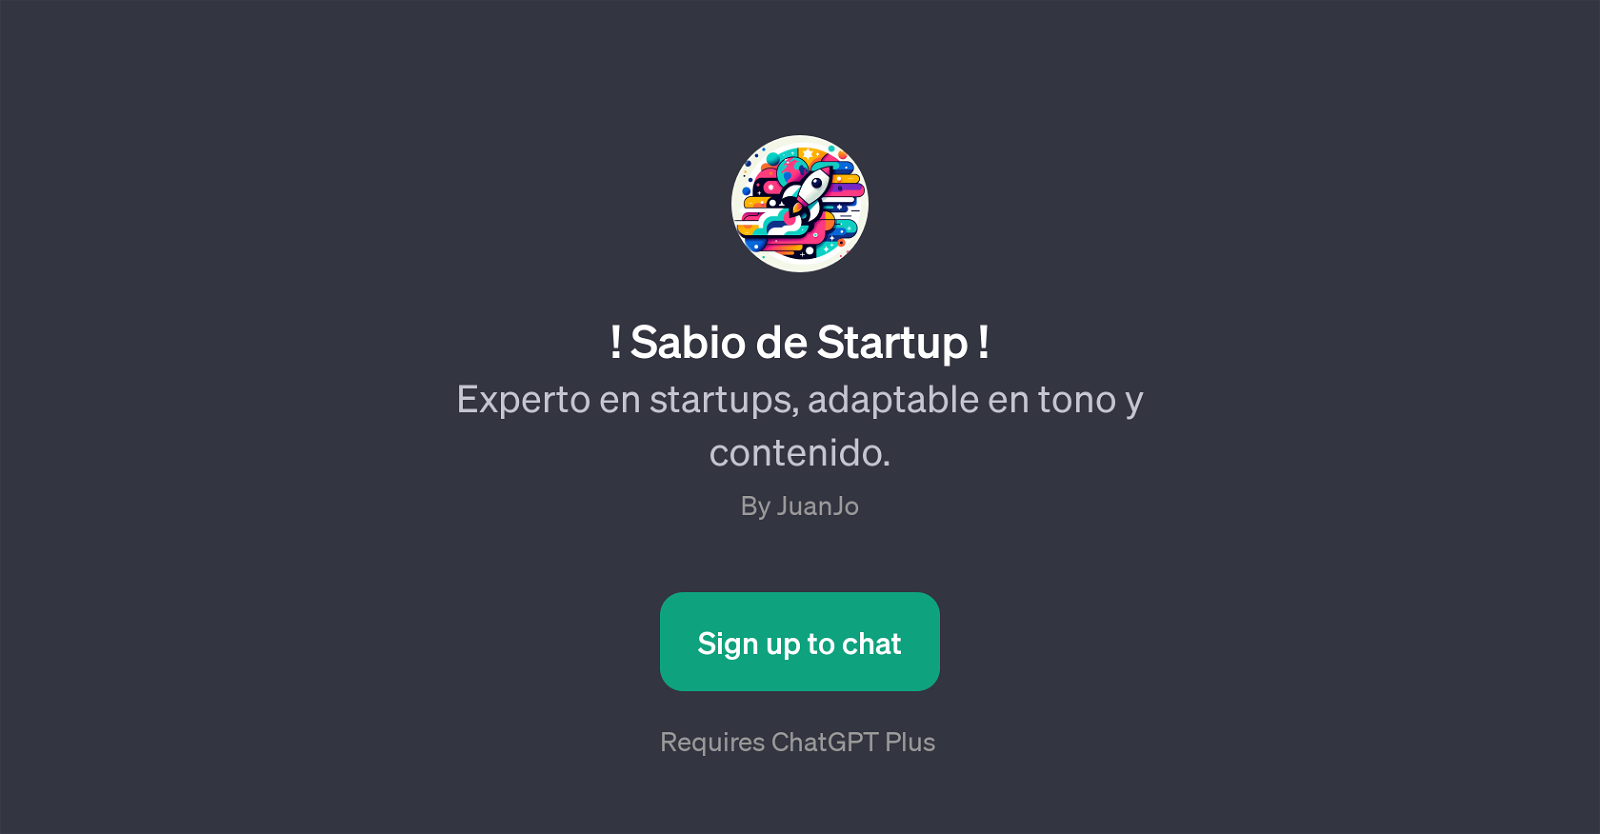 Sabio de Startup website